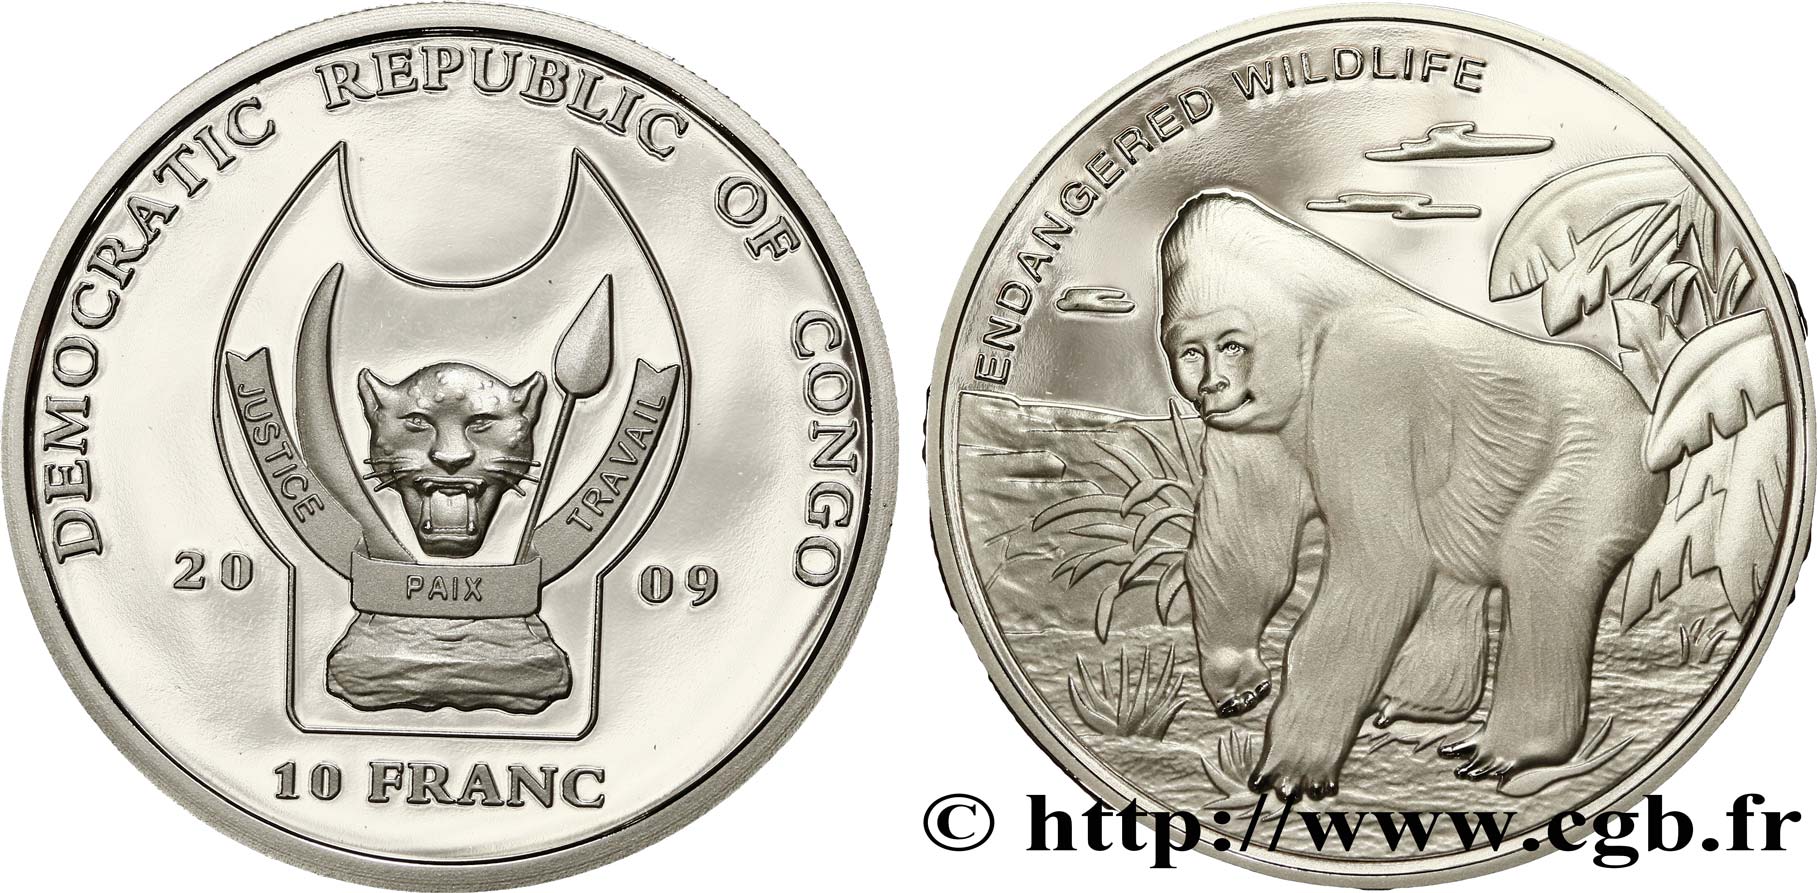 REPUBBLICA DEMOCRATICA DEL CONGO 10 Franc(s) Proof Espèces en danger : gorille 2009  FDC 